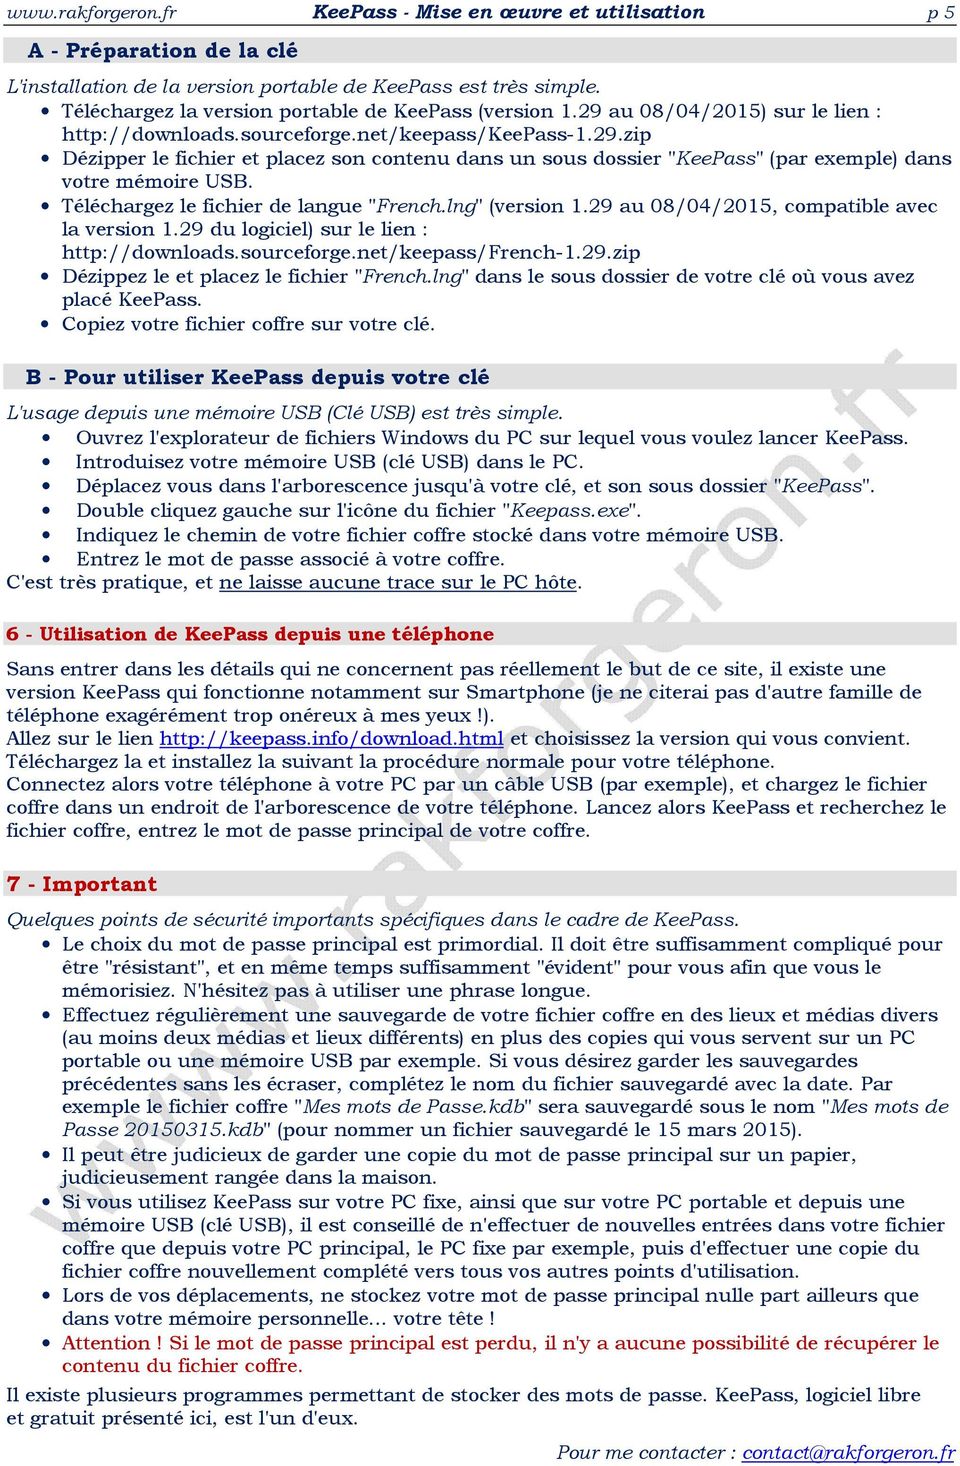 Téléchargez le fichier de langue "French.lng" (version 1.29 au 08/04/2015, compatible avec la version 1.29 du logiciel) sur le lien : http://downloads.sourceforge.net/keepass/french-1.29.zip Dézippez le et placez le fichier "French.